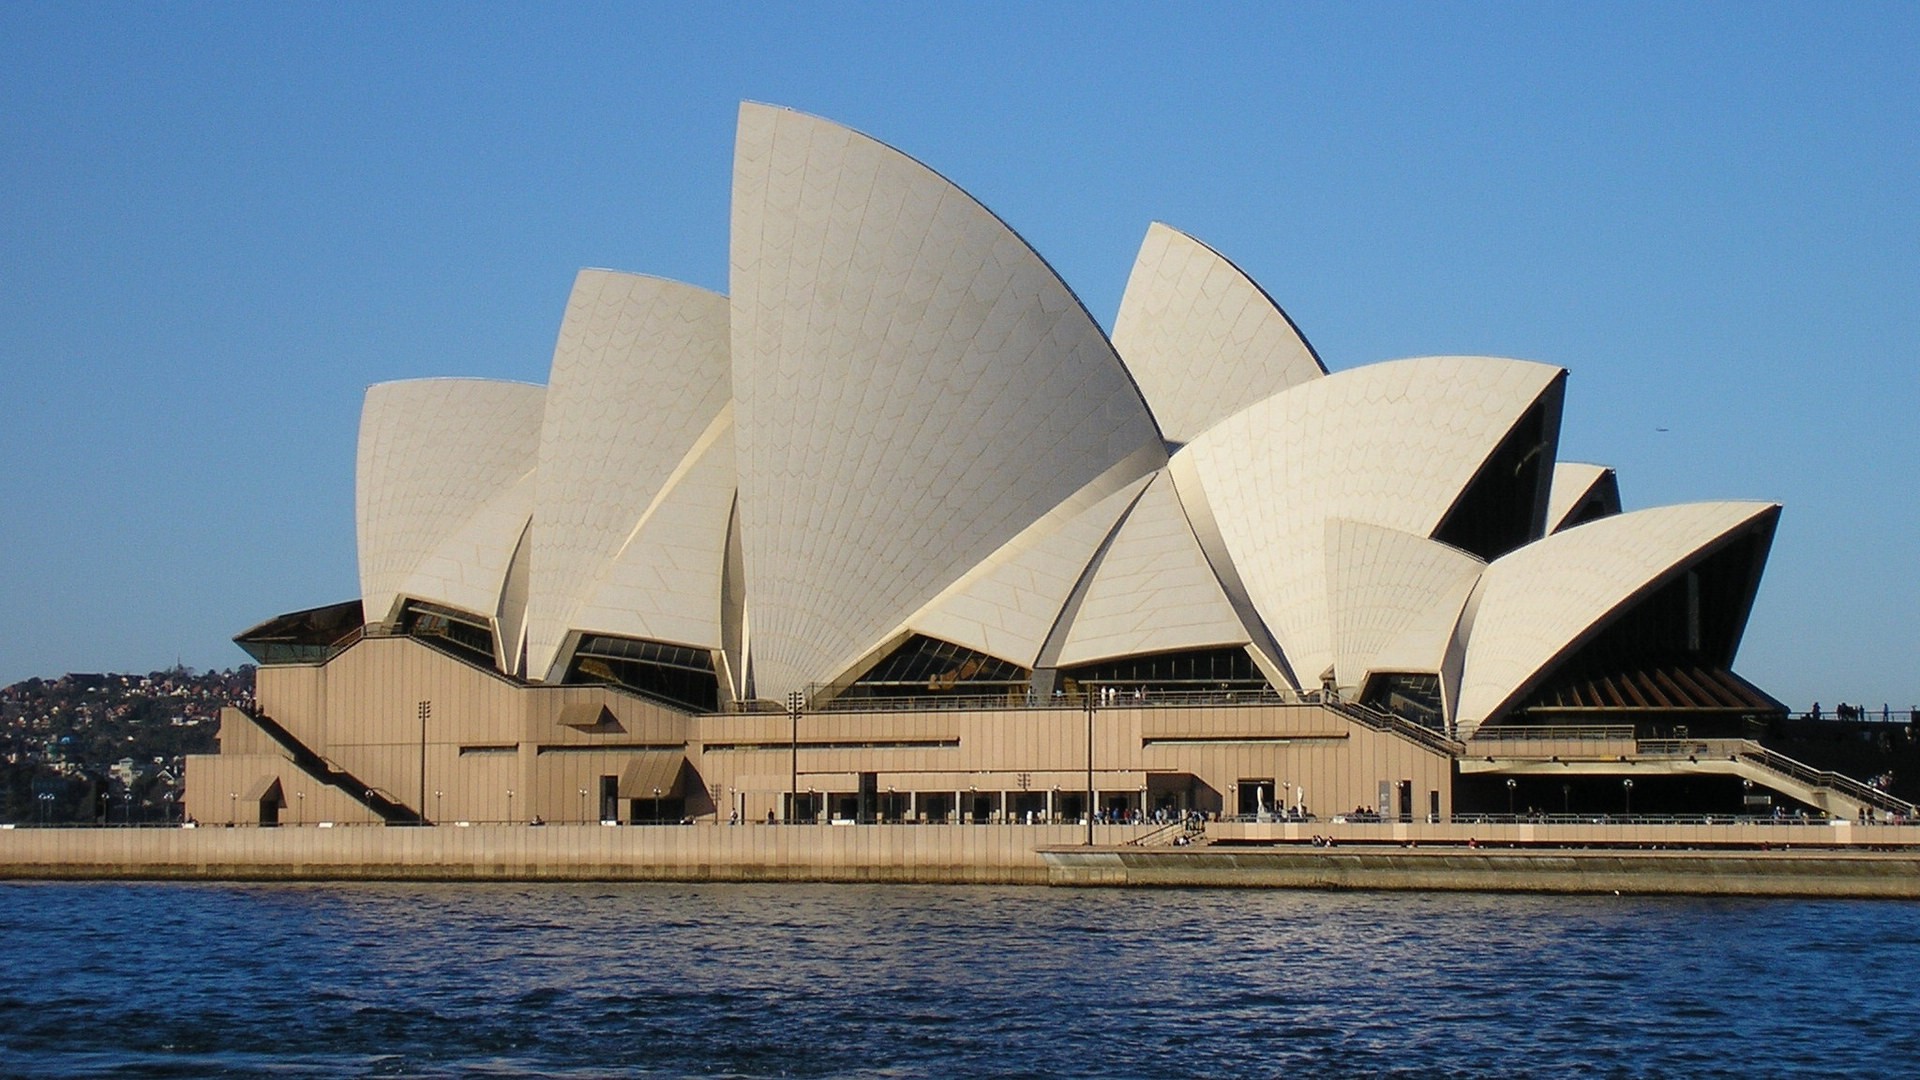 悉尼歌剧院图片大全 澳大利亚悉尼歌剧院图片(2)